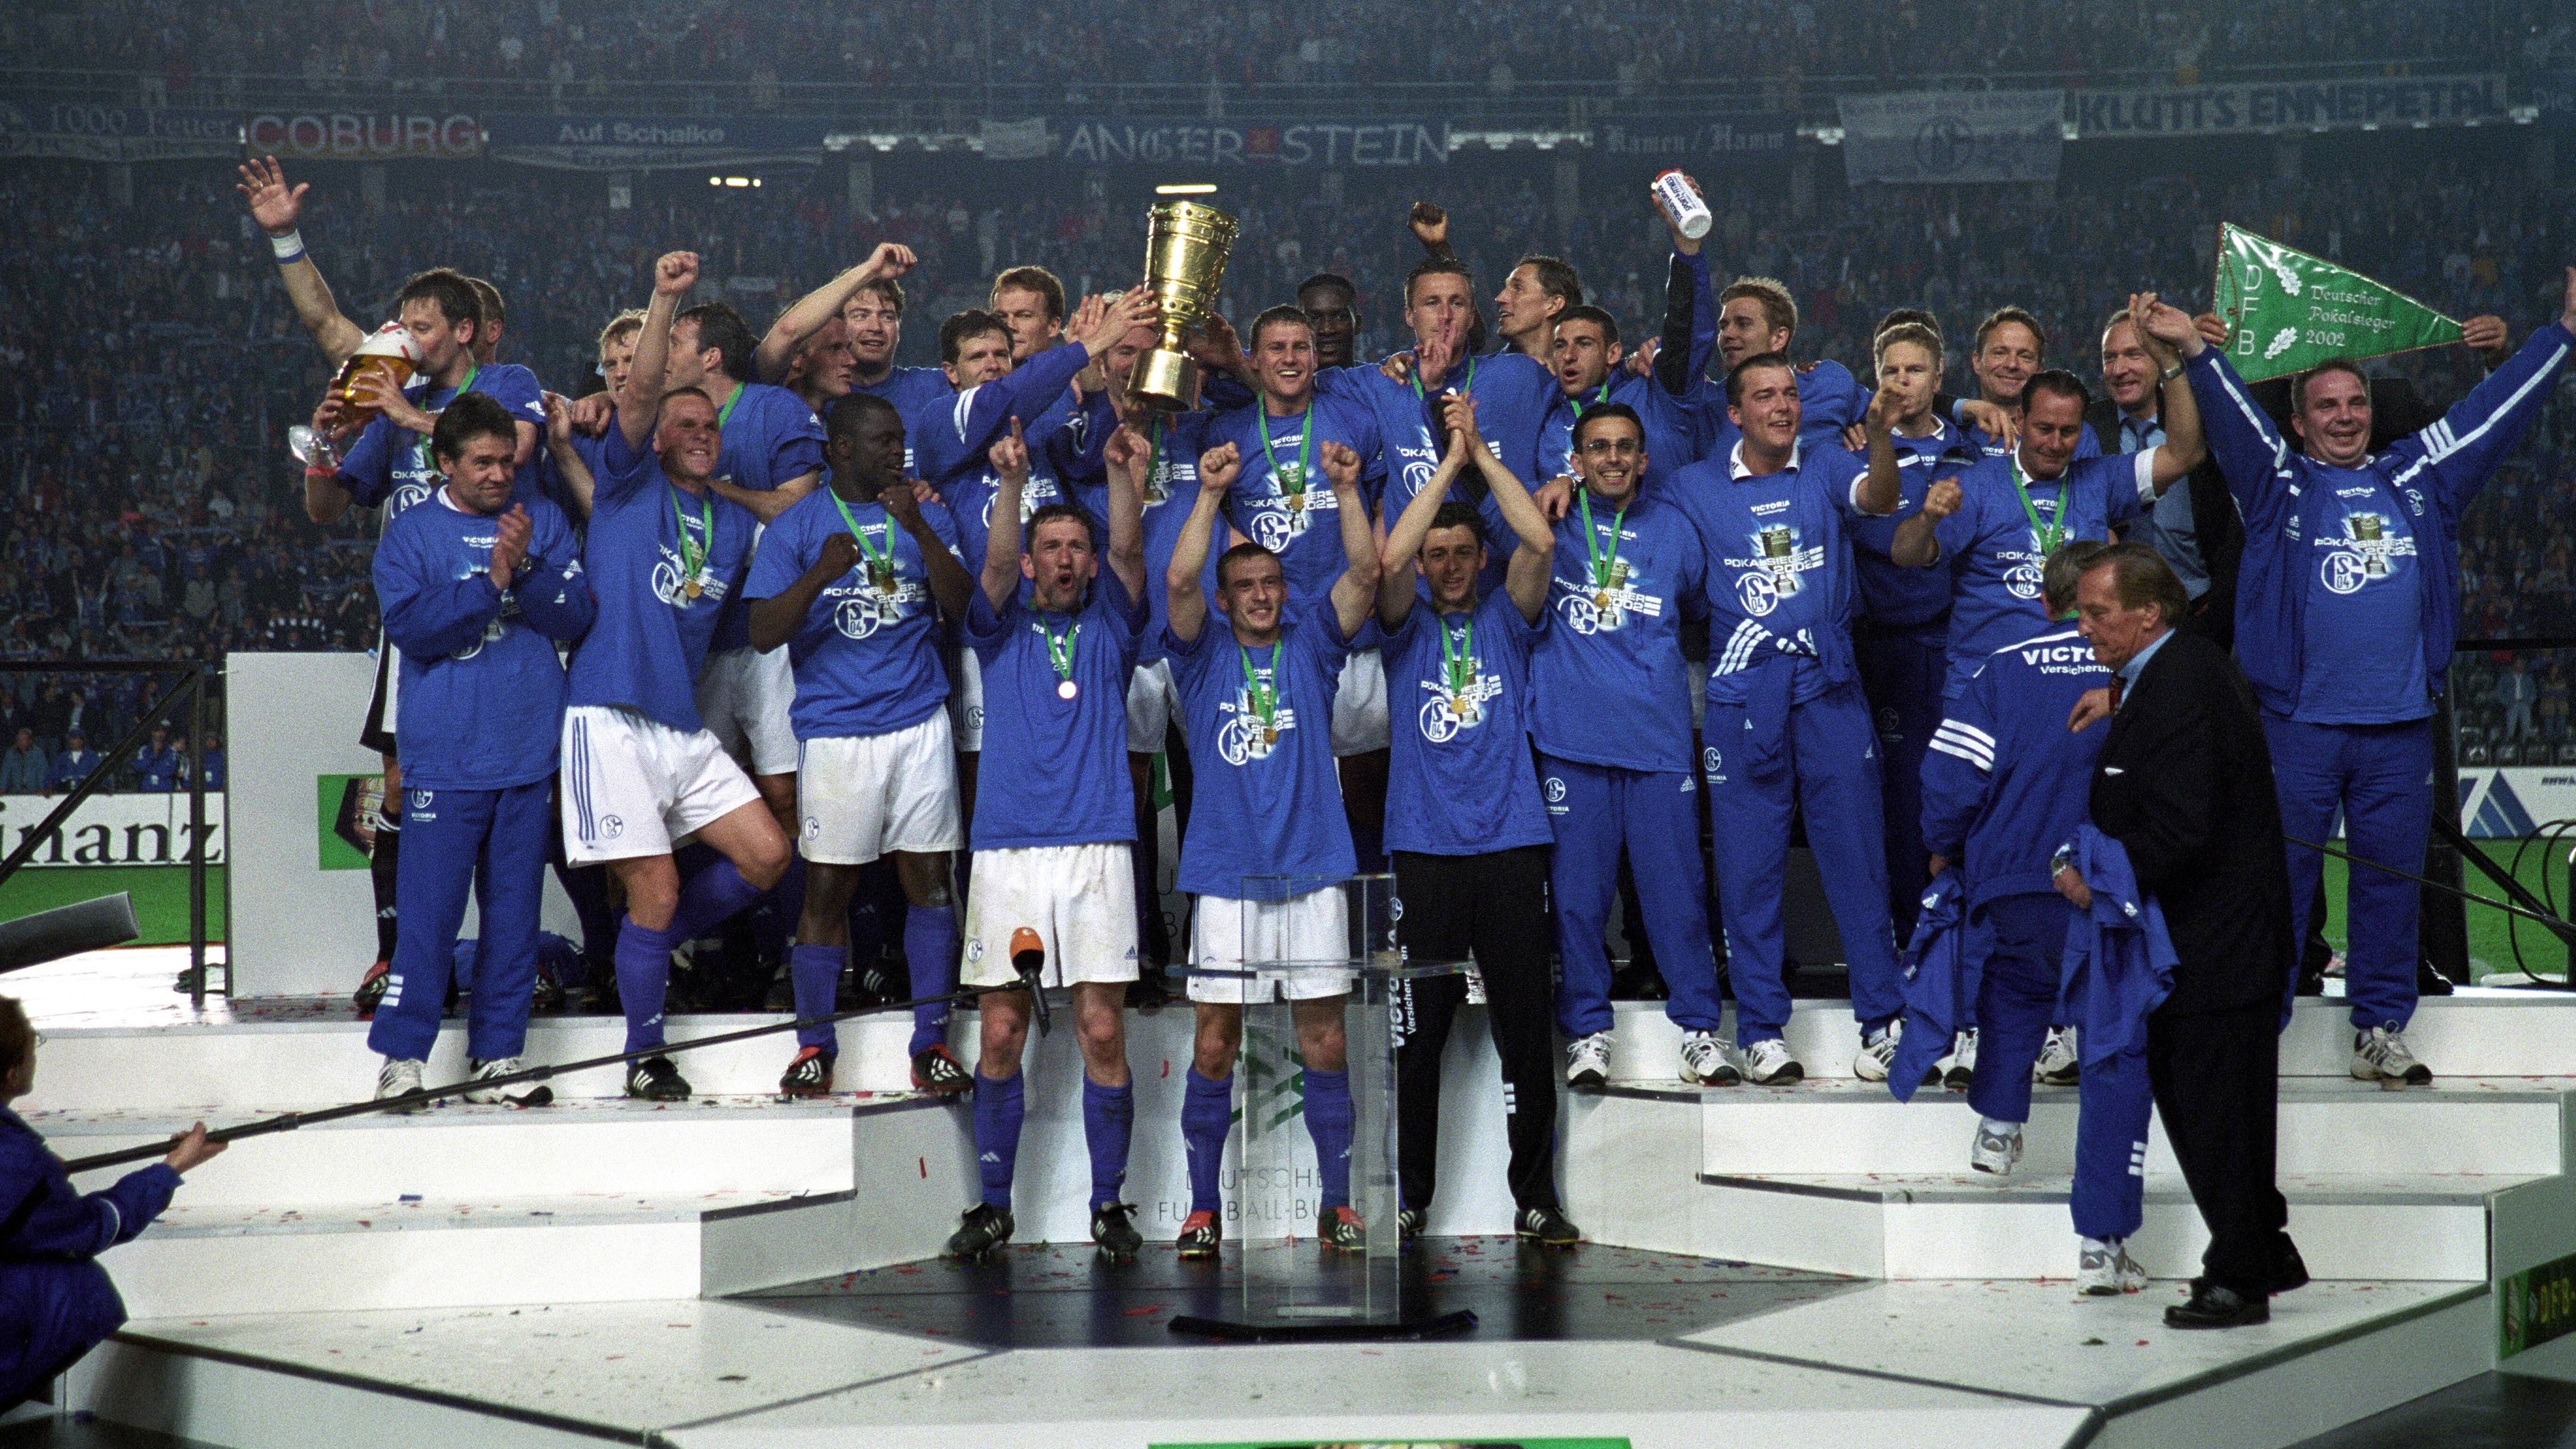 <strong>Platz 7 (geteilt): FC Schalke 04 (14 Siege)</strong><br>Der FC Schalke 04 gewann 2001 und 2002 jeweils den DFB-Pokal. Zwischen August 2000 und November 2002 gelangen dadurch 14 Siege, ehe die Erfolgsserie in einem Elfmeterschießen gegen den FC Bayern München endete.